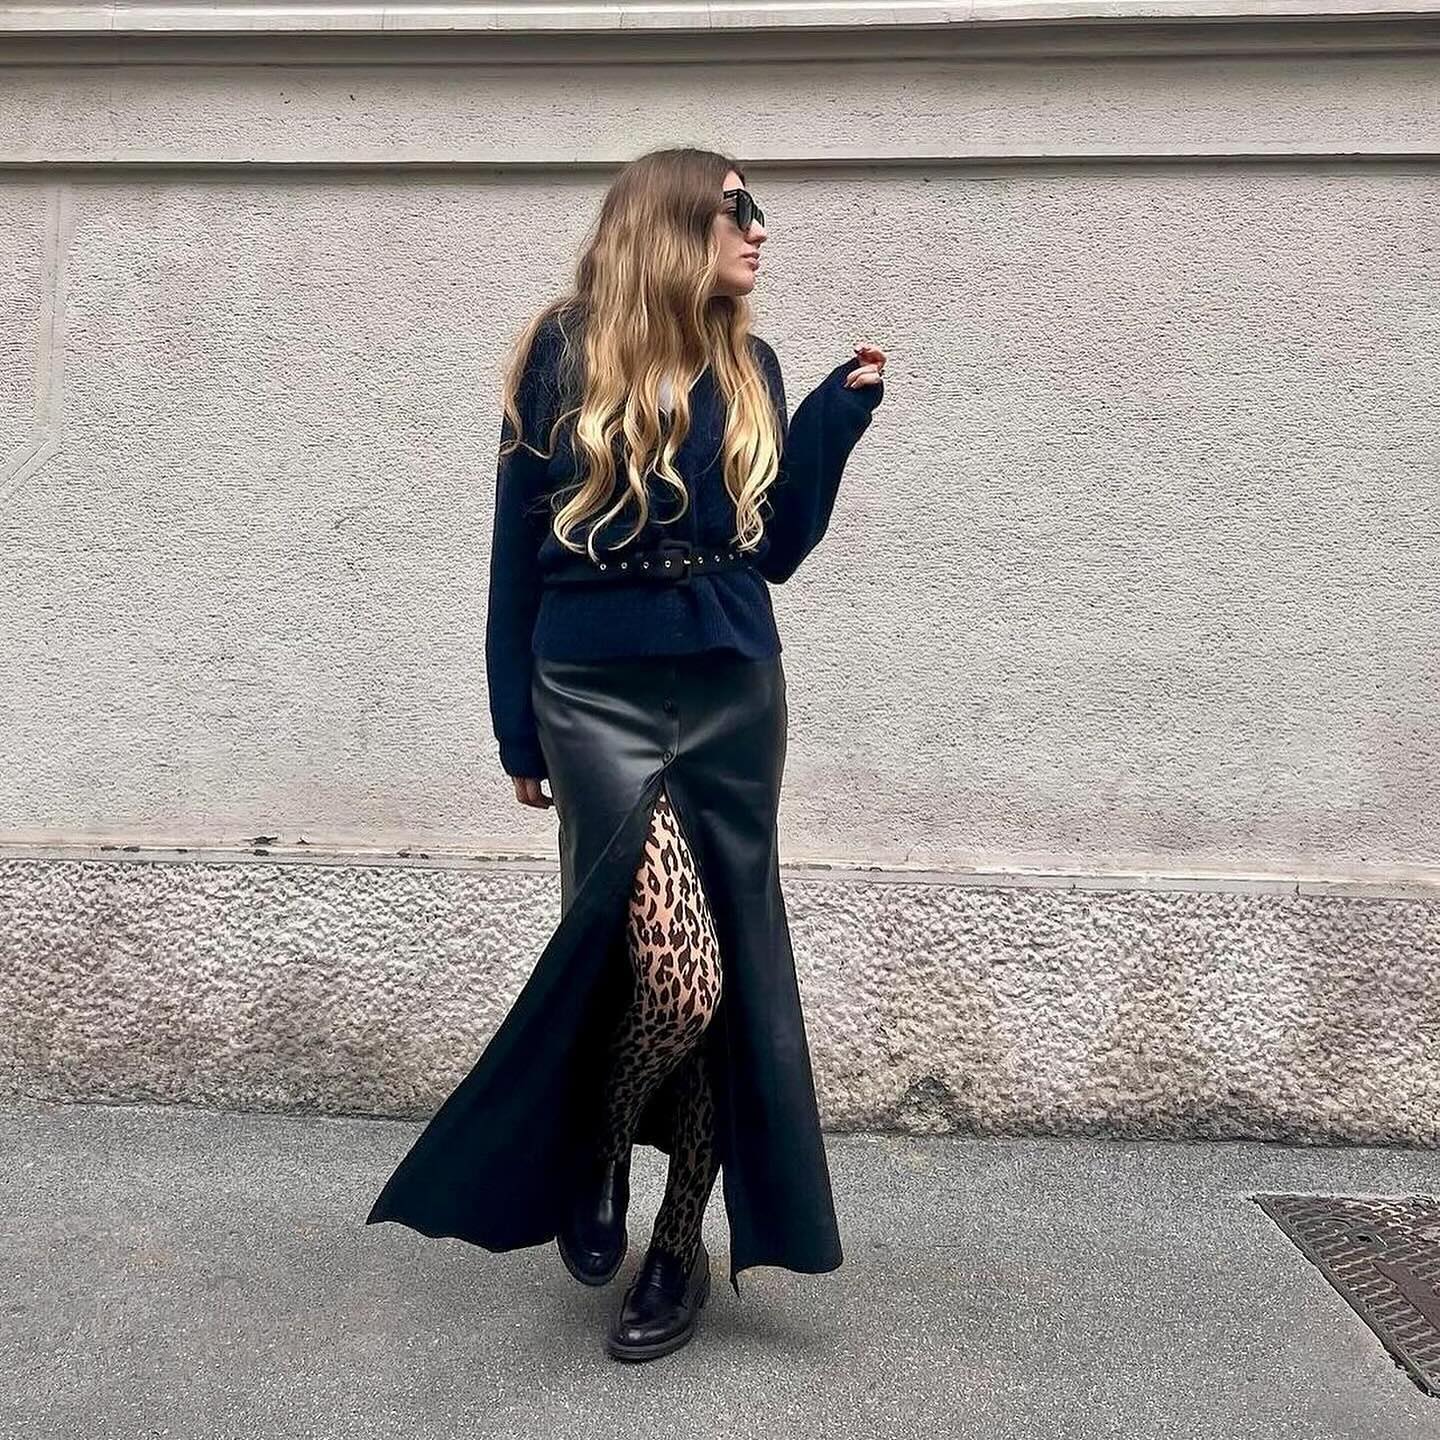 Wolford Mat De Luxe Form Black Bodysuit Shapewear Women's XSC New